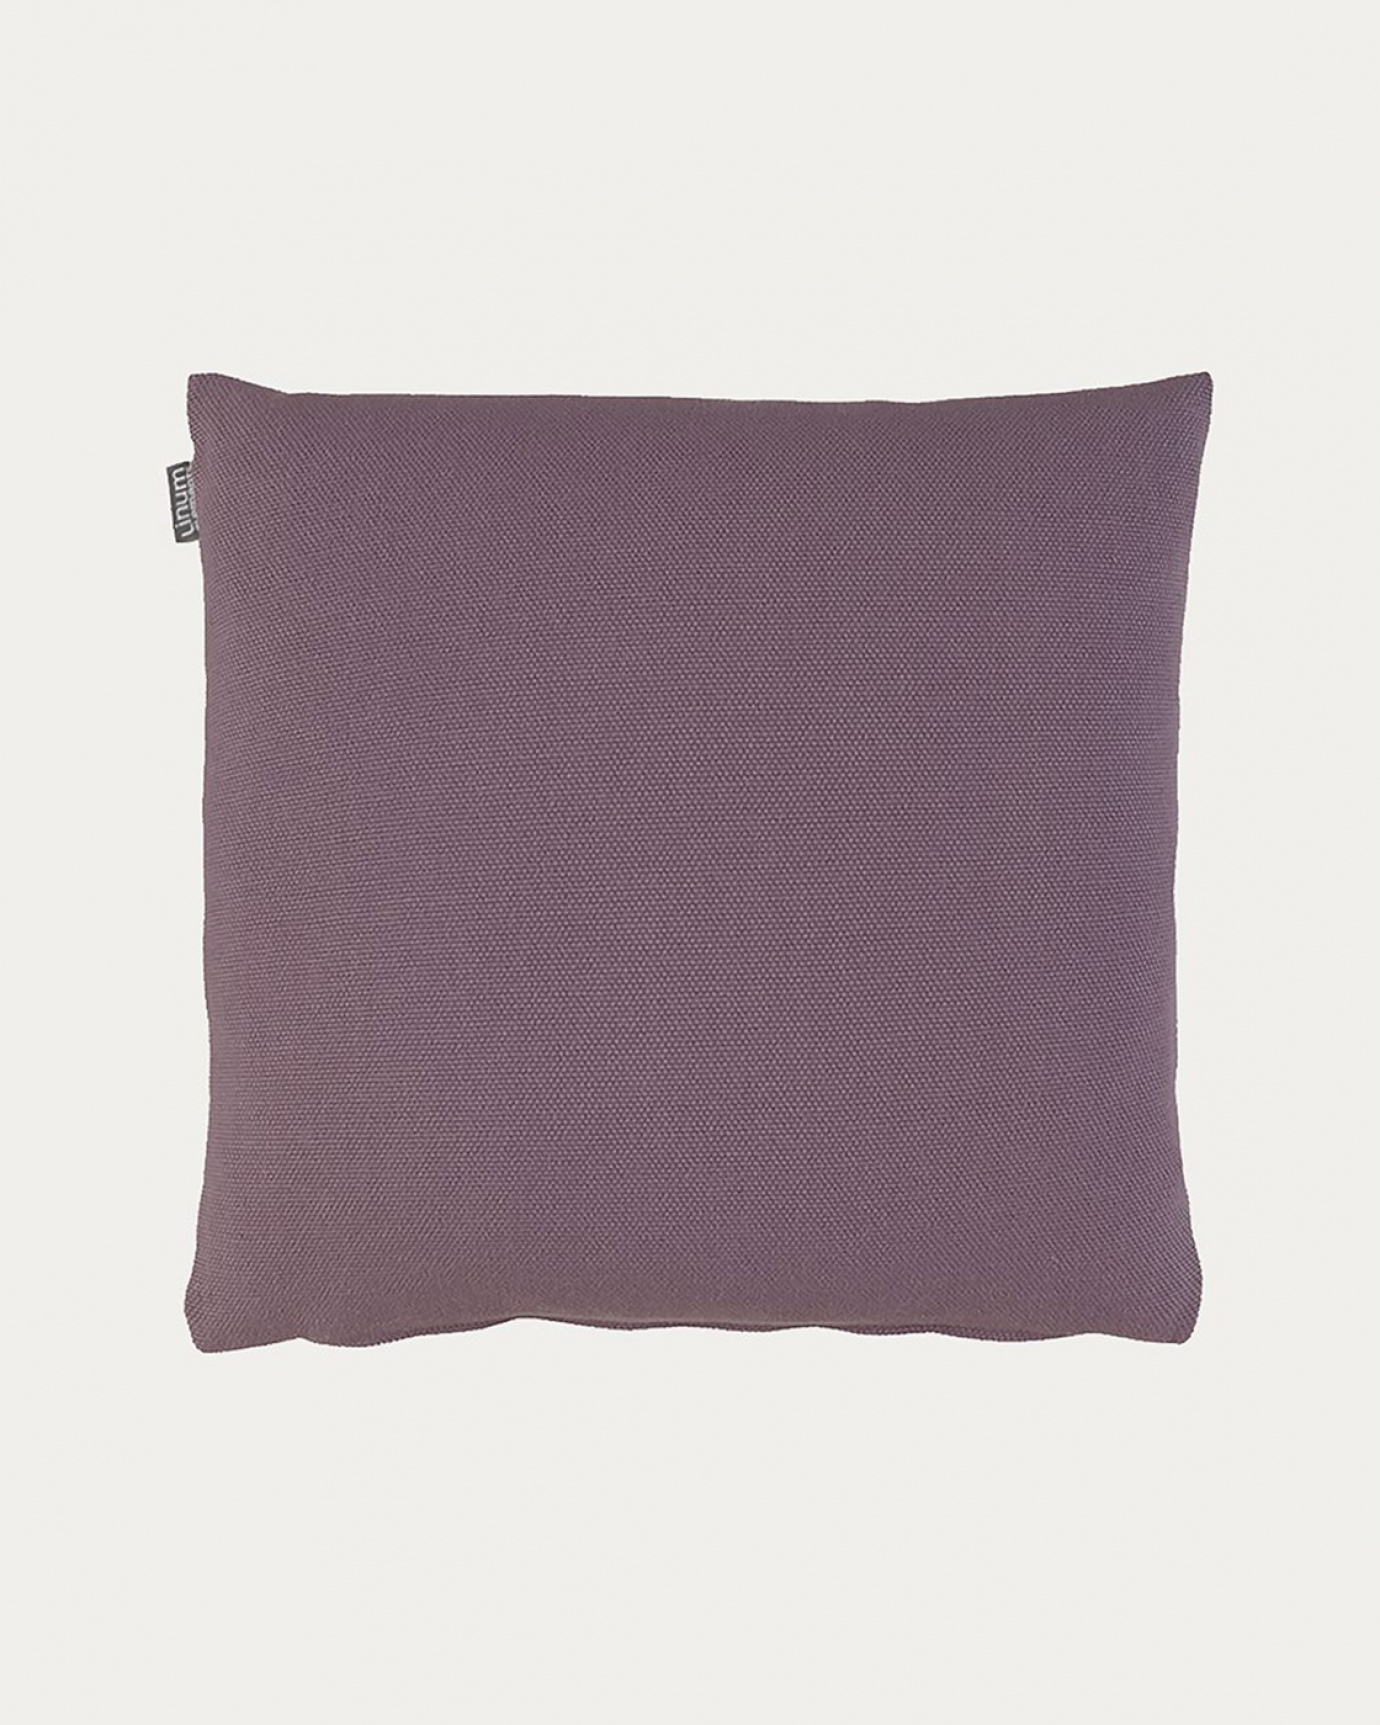 Image du produit housse de coussin PEPPER violet pastel foncé en coton doux de LINUM DESIGN. Facile à laver et durable pendant des générations. Taille 50 x 50 cm.